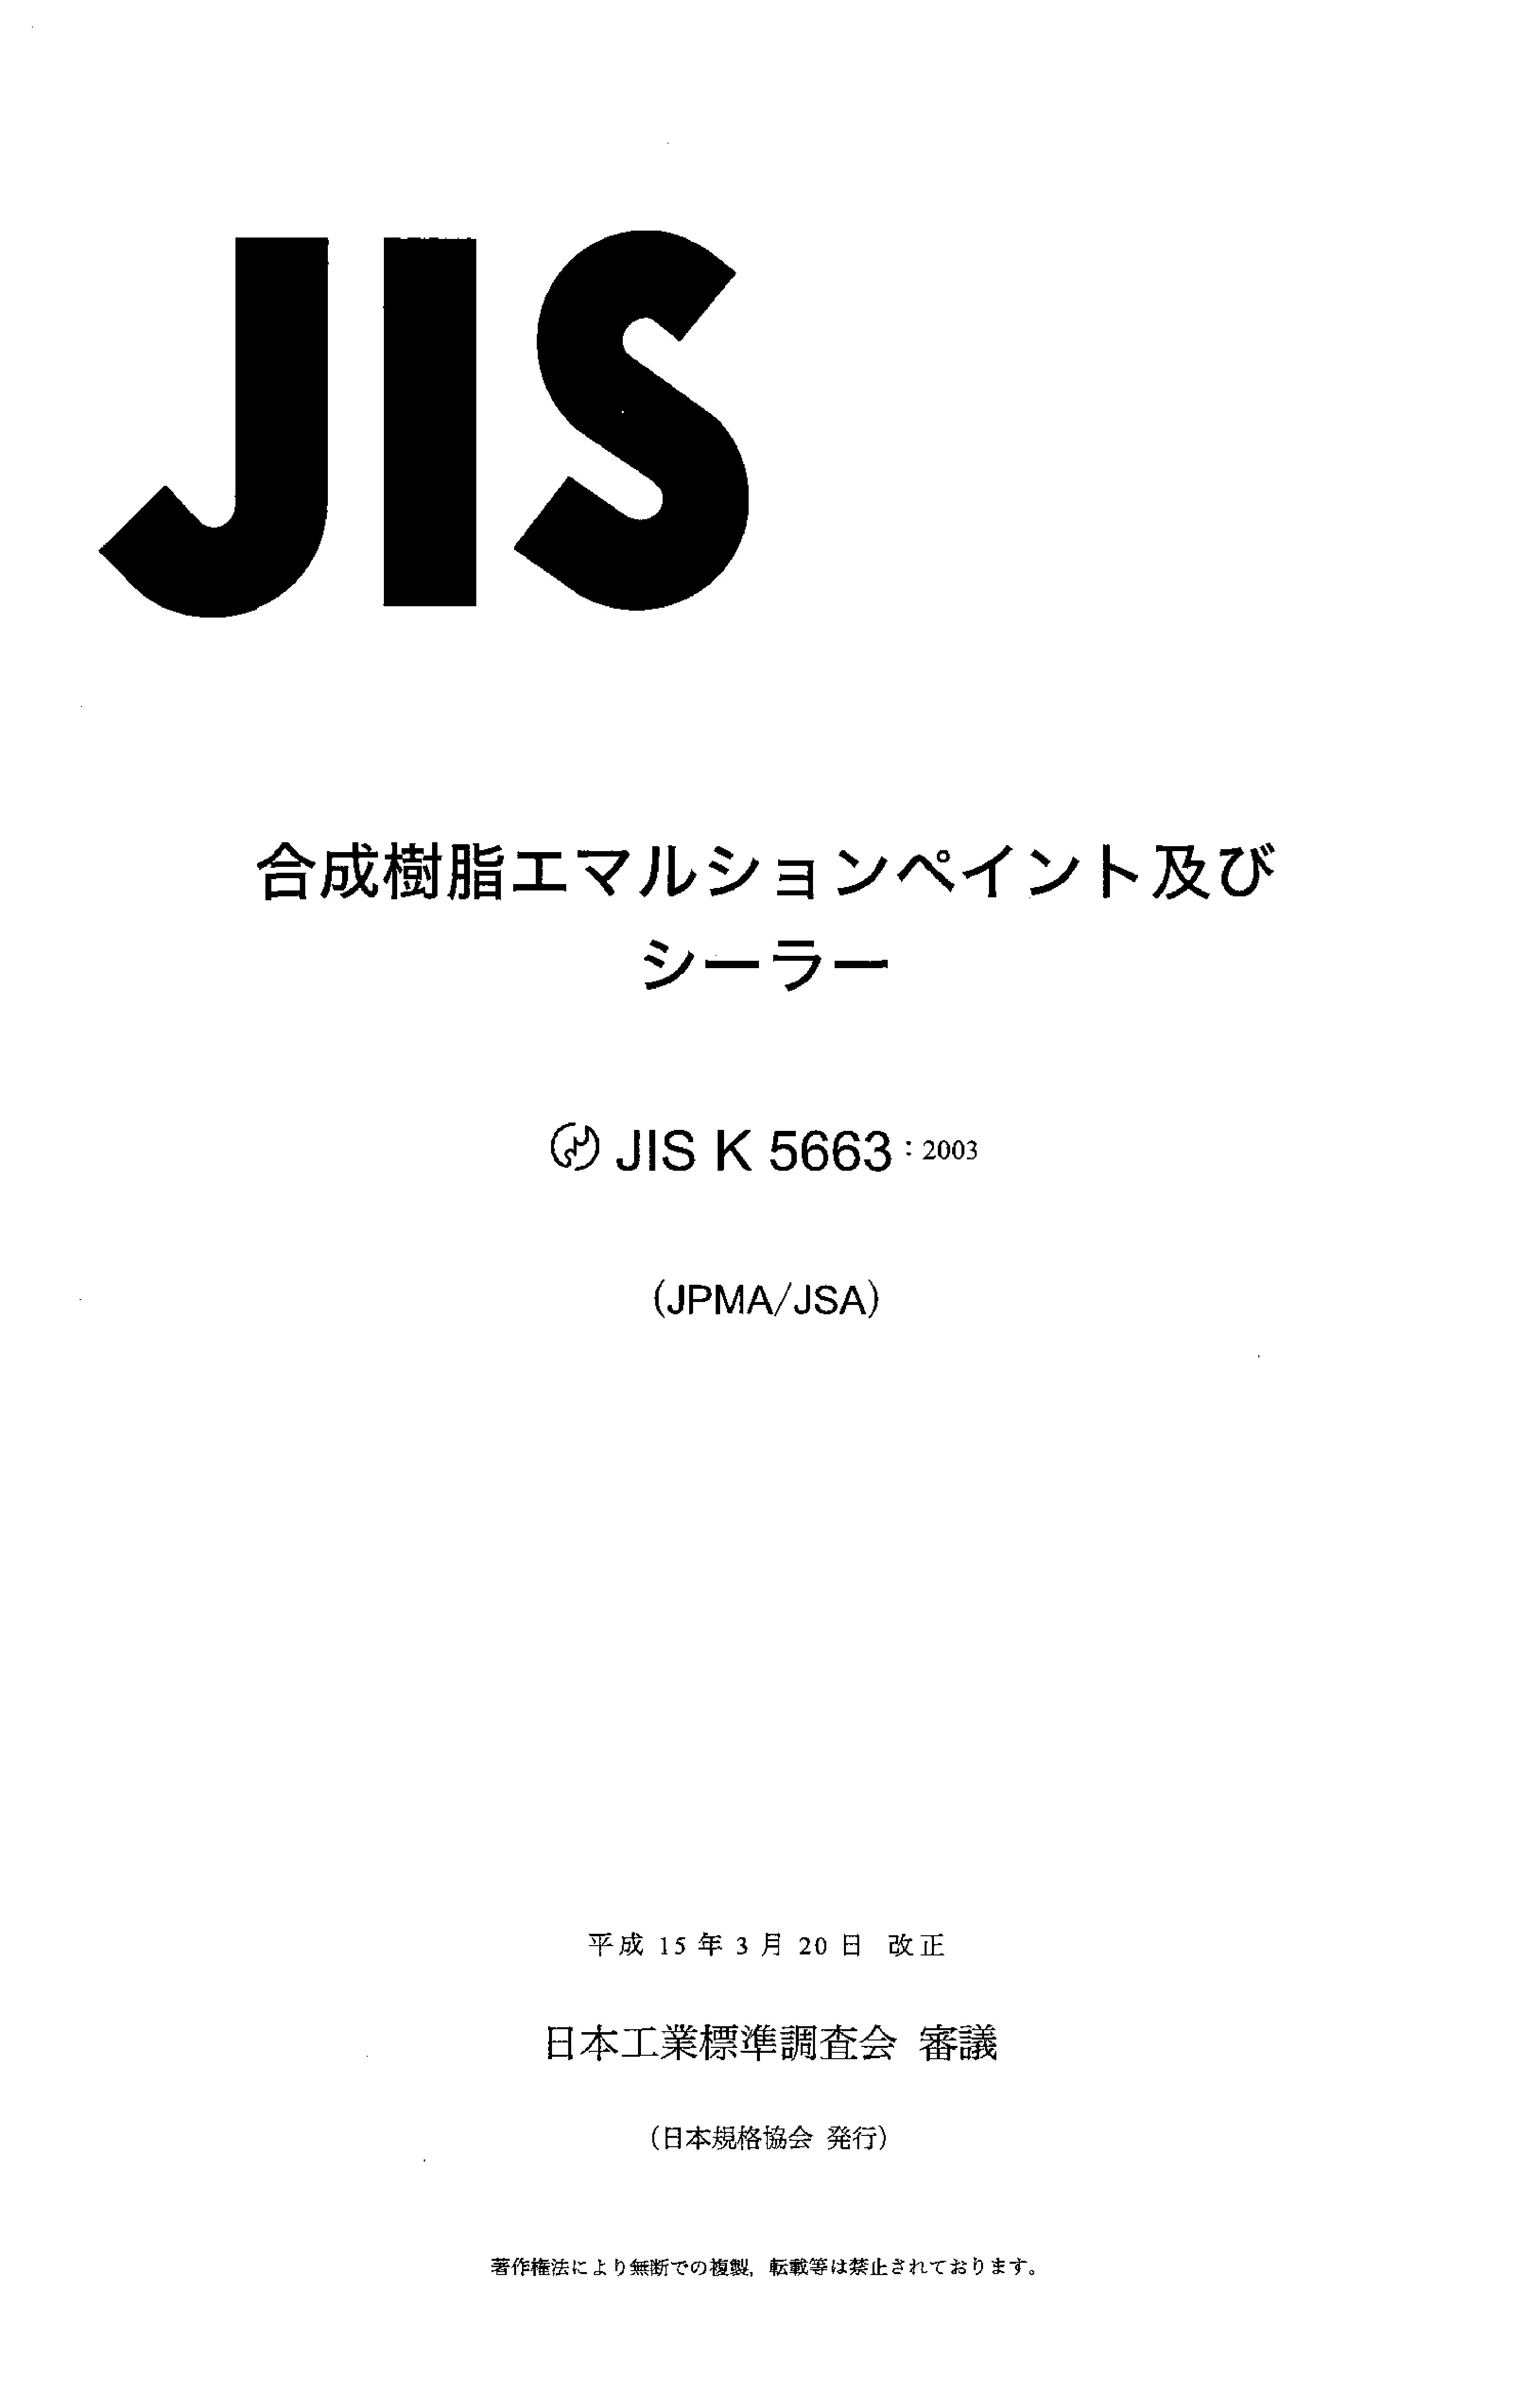 JIS K 5663:2003